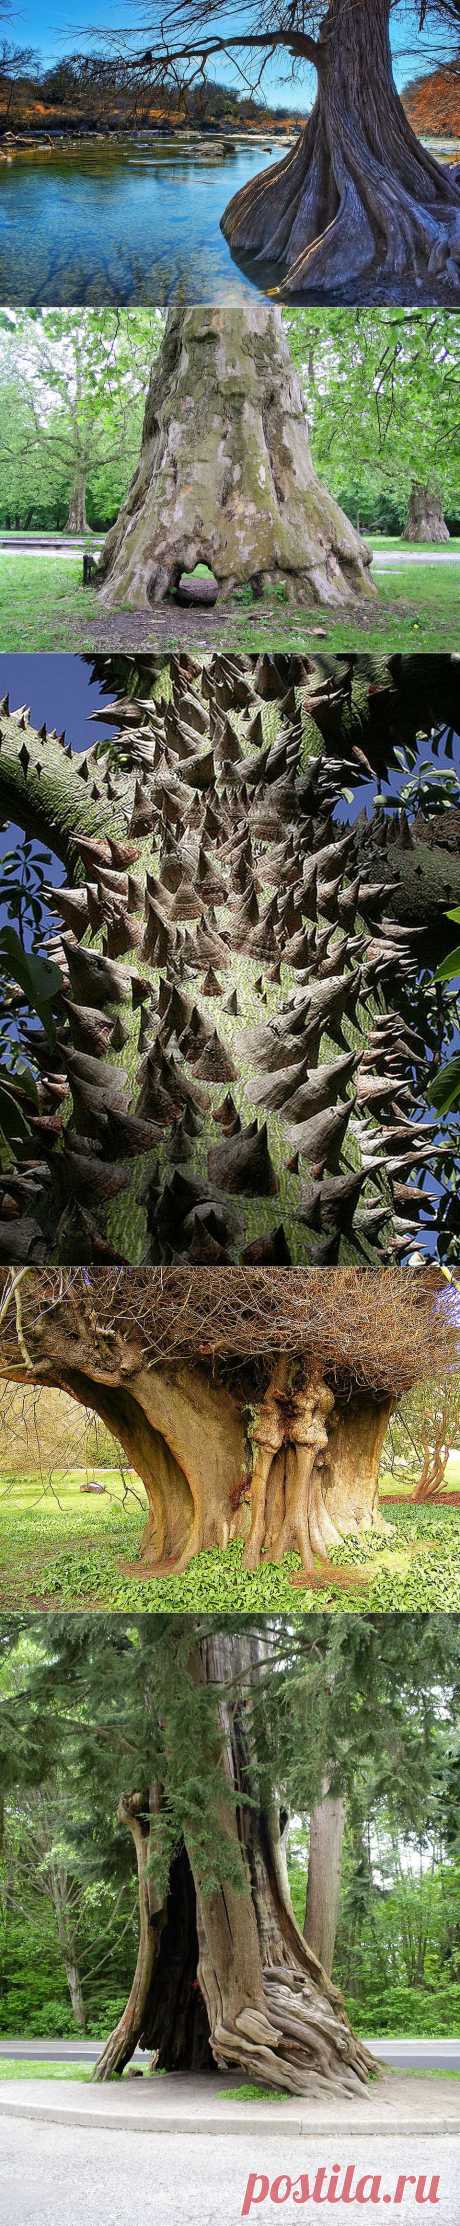 Самые необычные деревья в мире | Newpix.ru - позитивный интернет-журнал